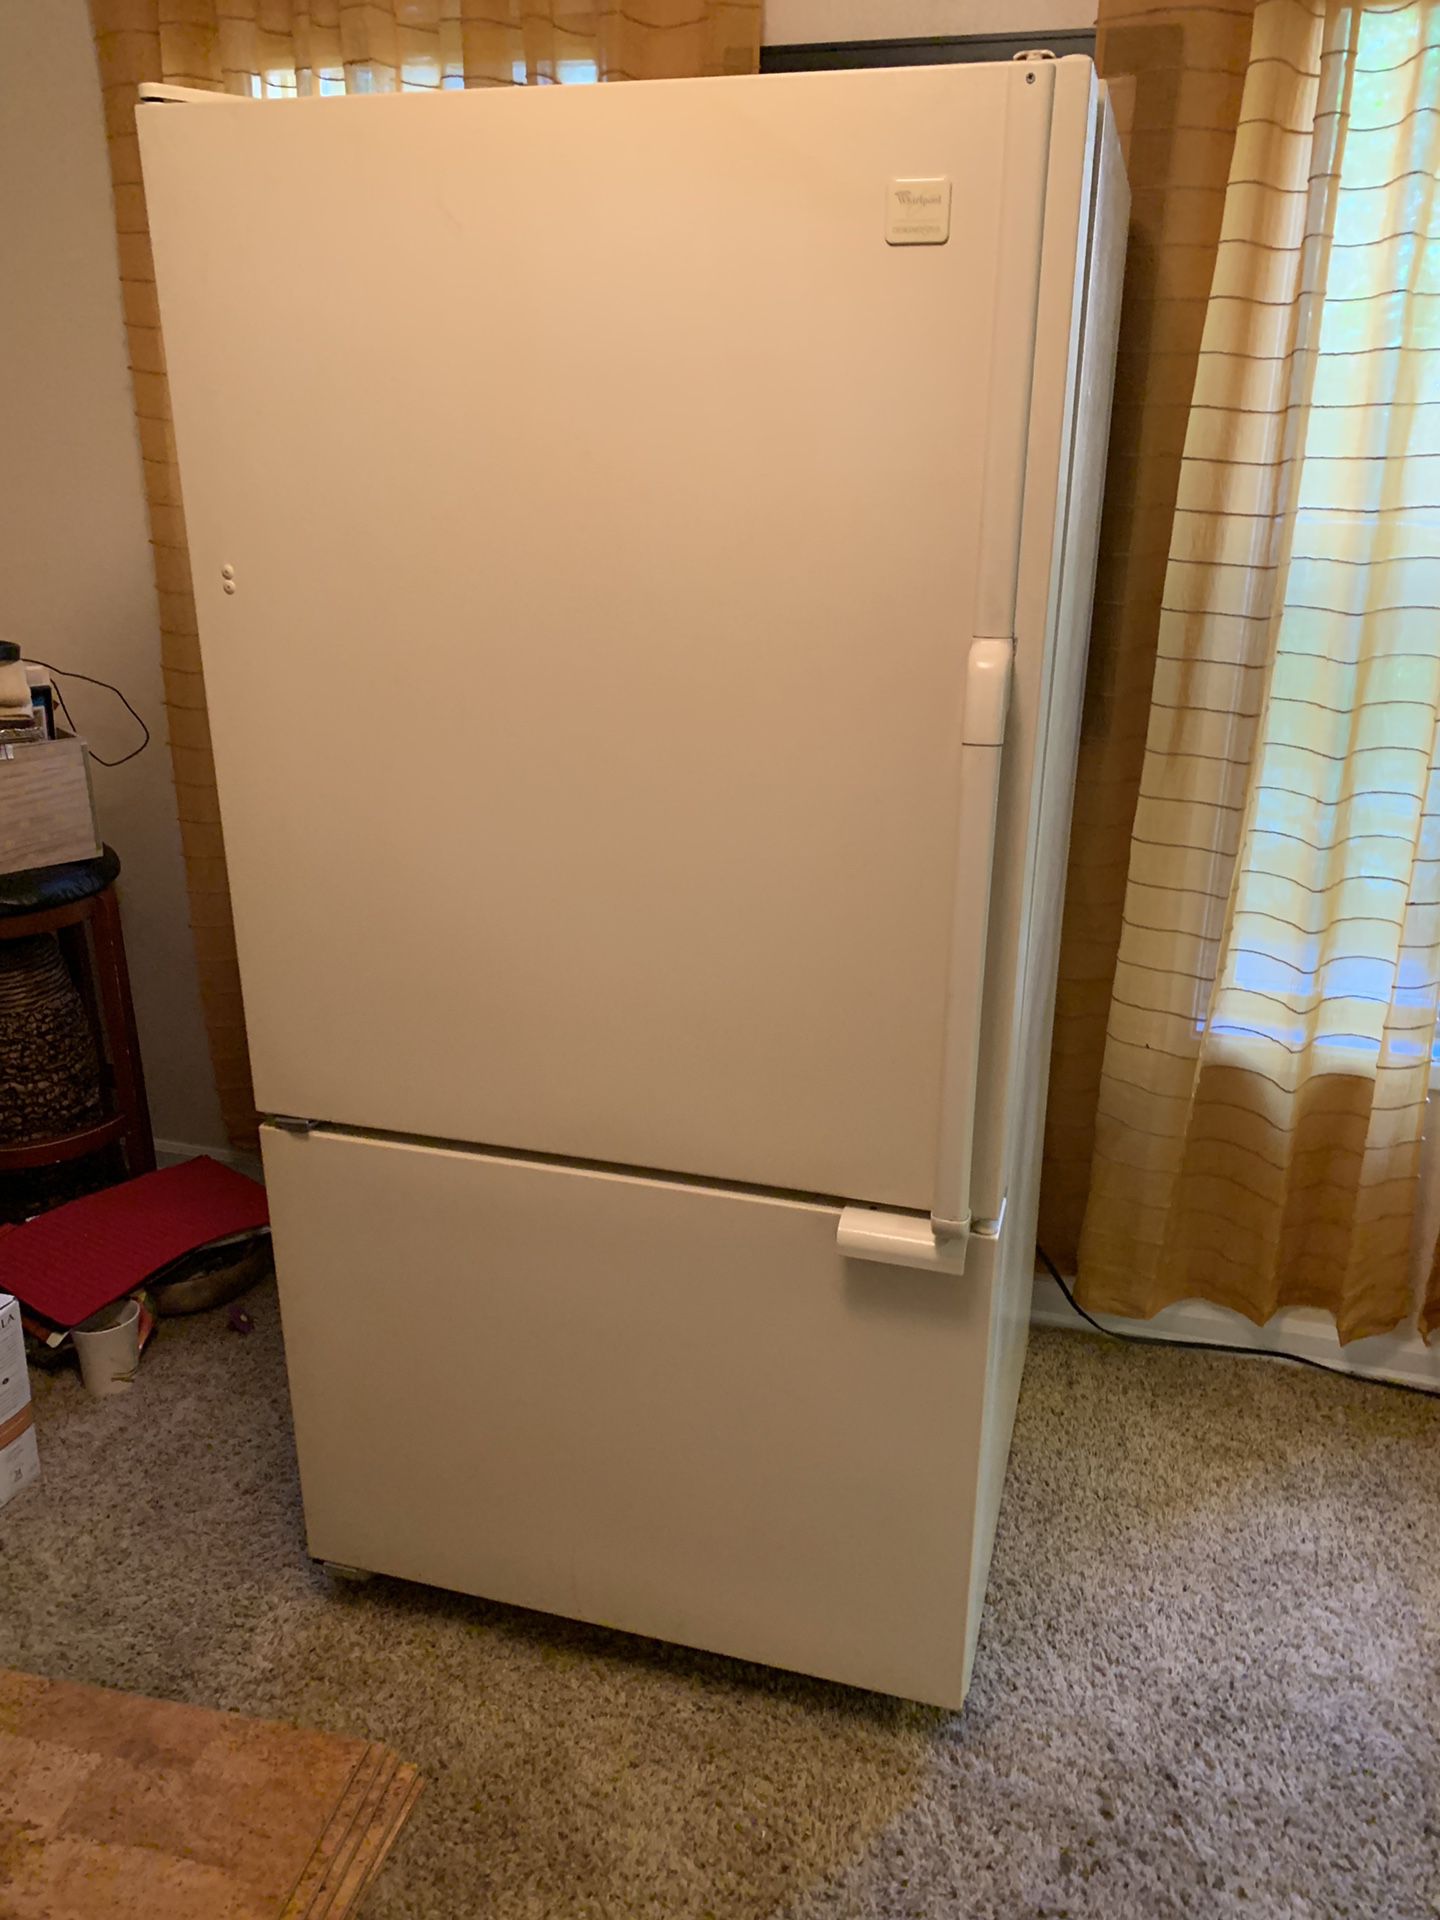 Kitchen whirlpool designer style refrigerator/freezer